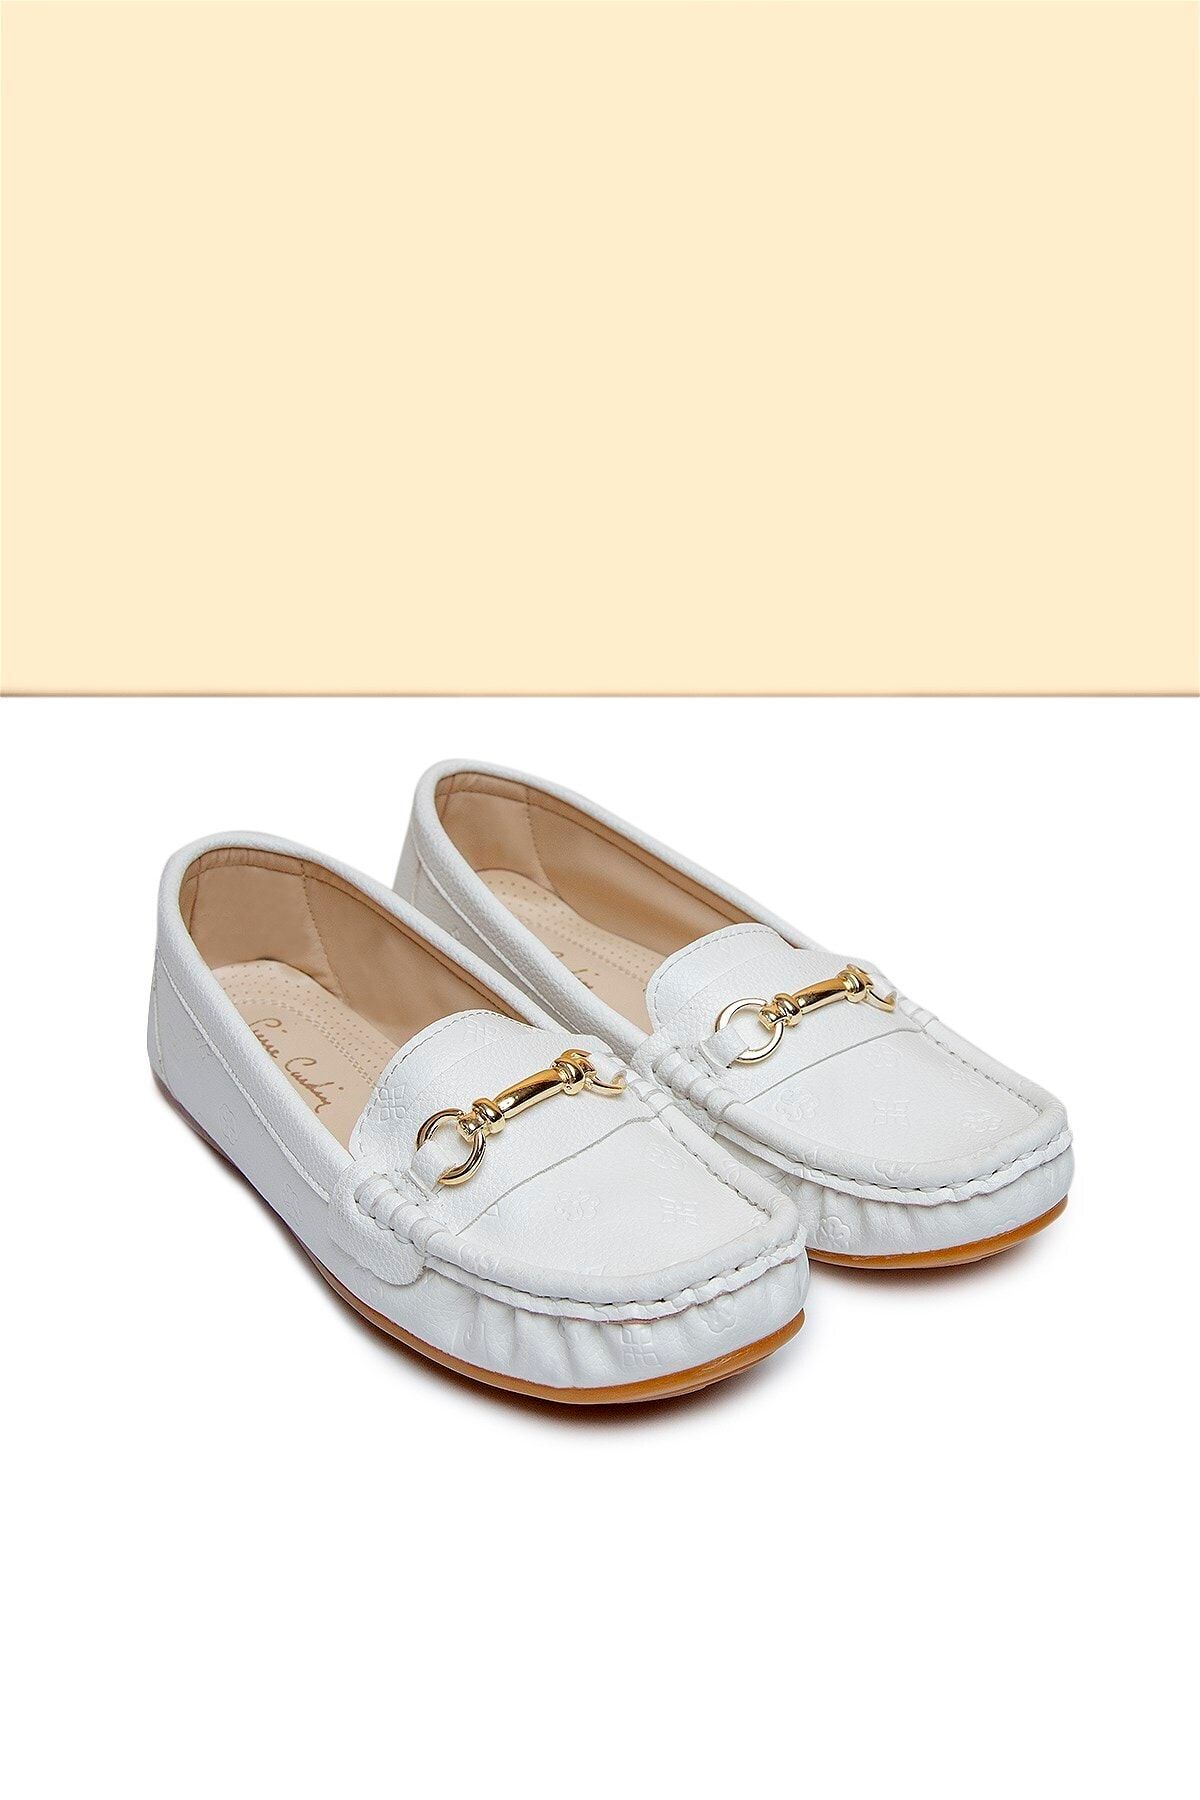 Pierre Cardin Pc-50696 Beyaz Kadın Ayakkabı